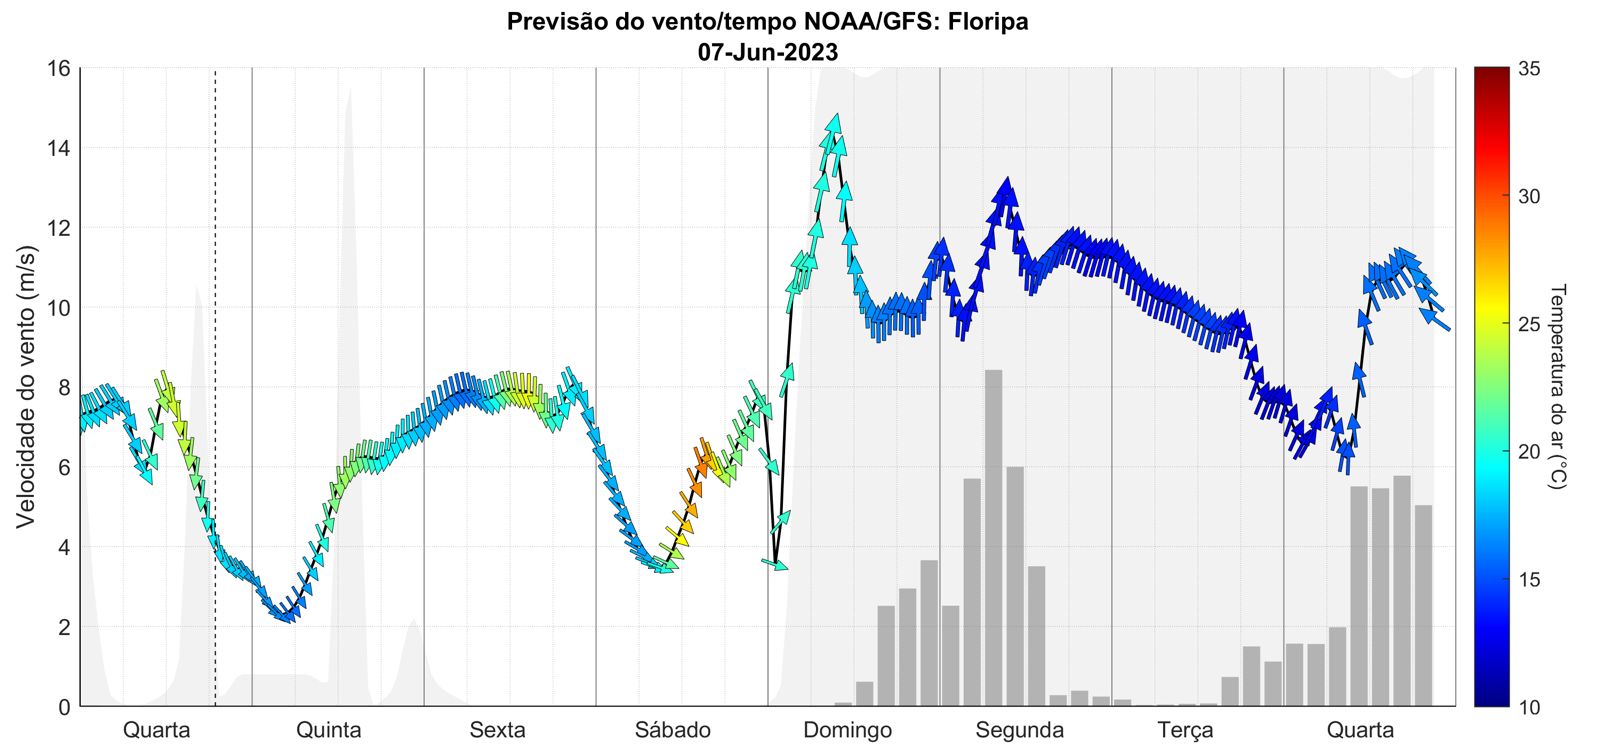 Previsão de vento para Floripa mostra a condição de S-SW no domingo. O vento vira para S na segunda e só na quarta deve rodar para SE.